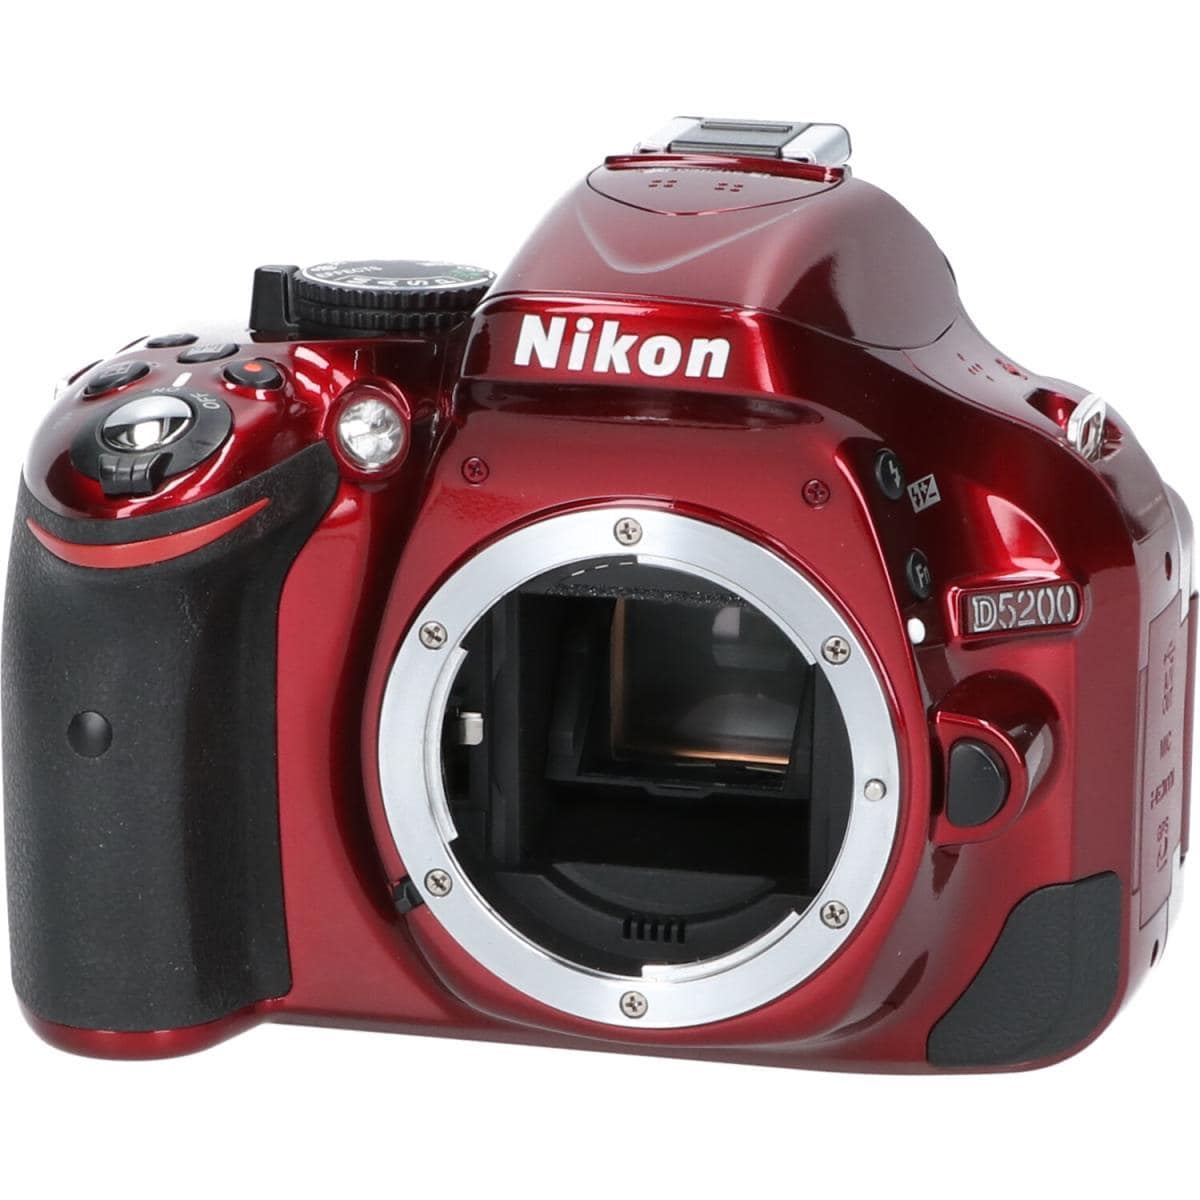 Nikon D5200nikon